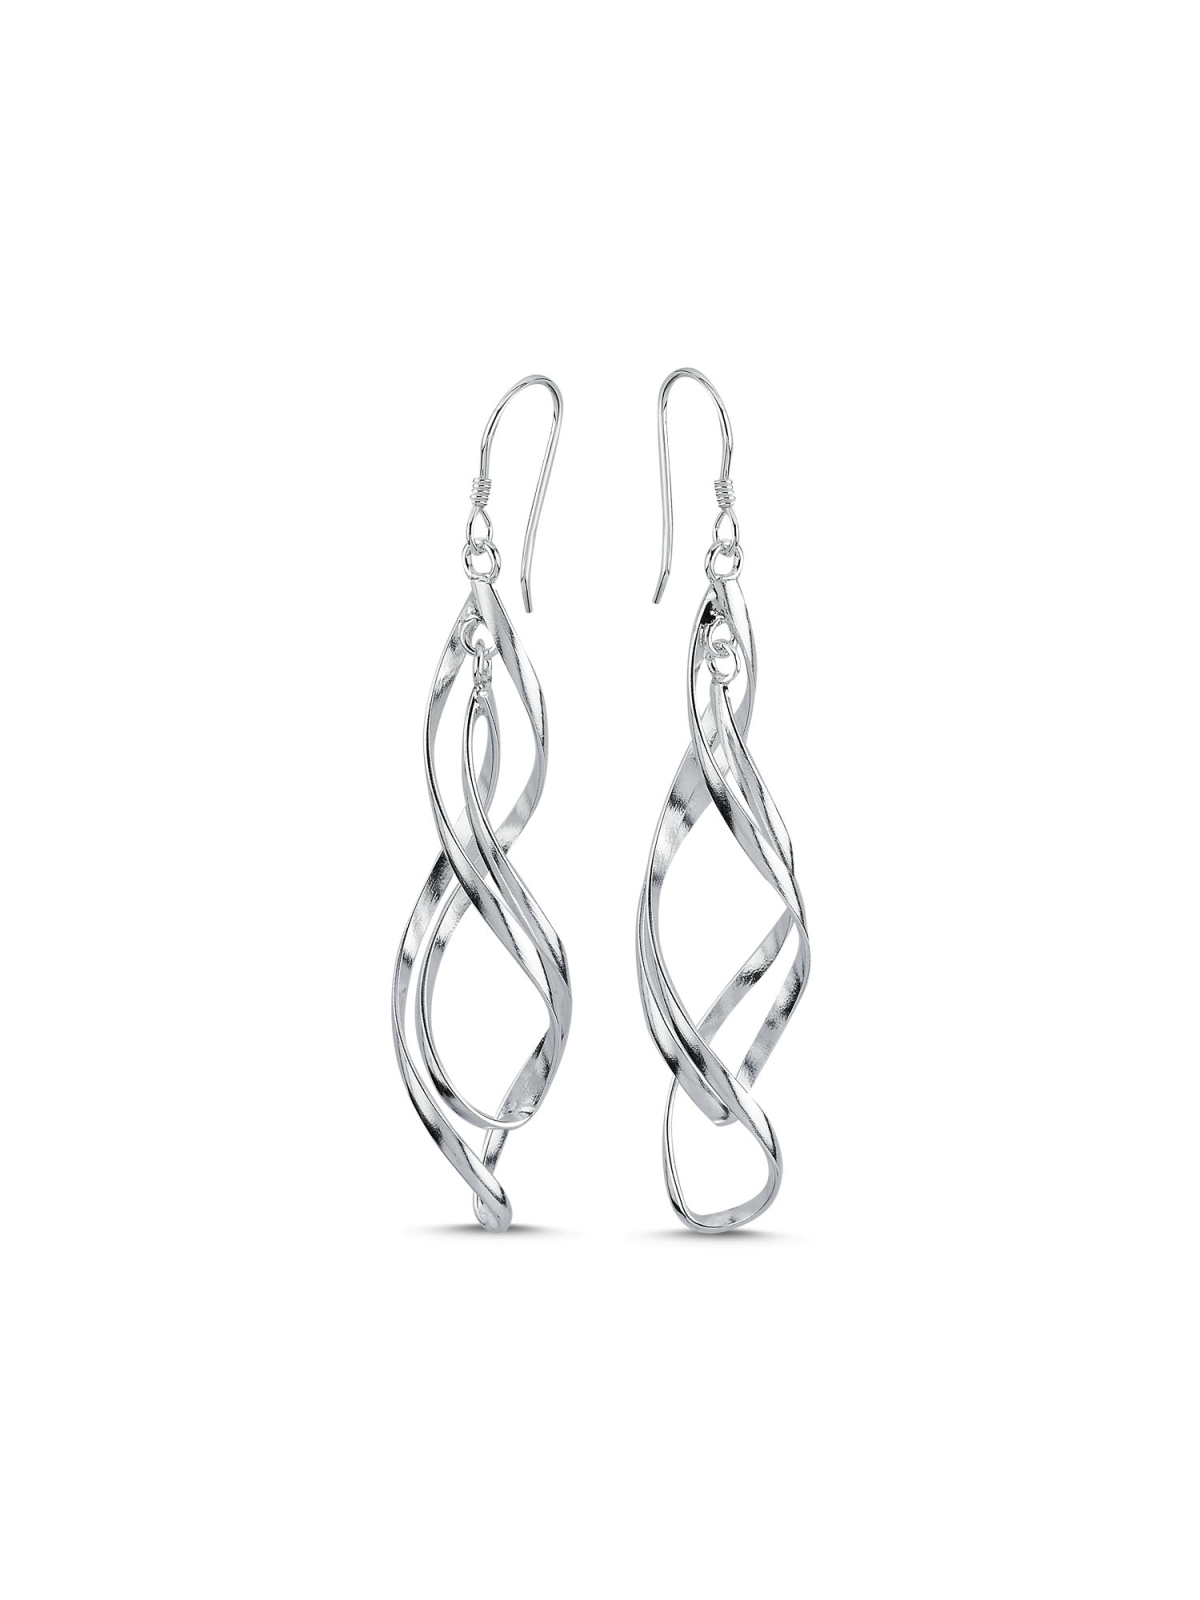 https://malis.ca/1352-product_zoom/sterling-silver-dangle-fish-hook-earrings-mali-s-canadian-jewellery.jpg